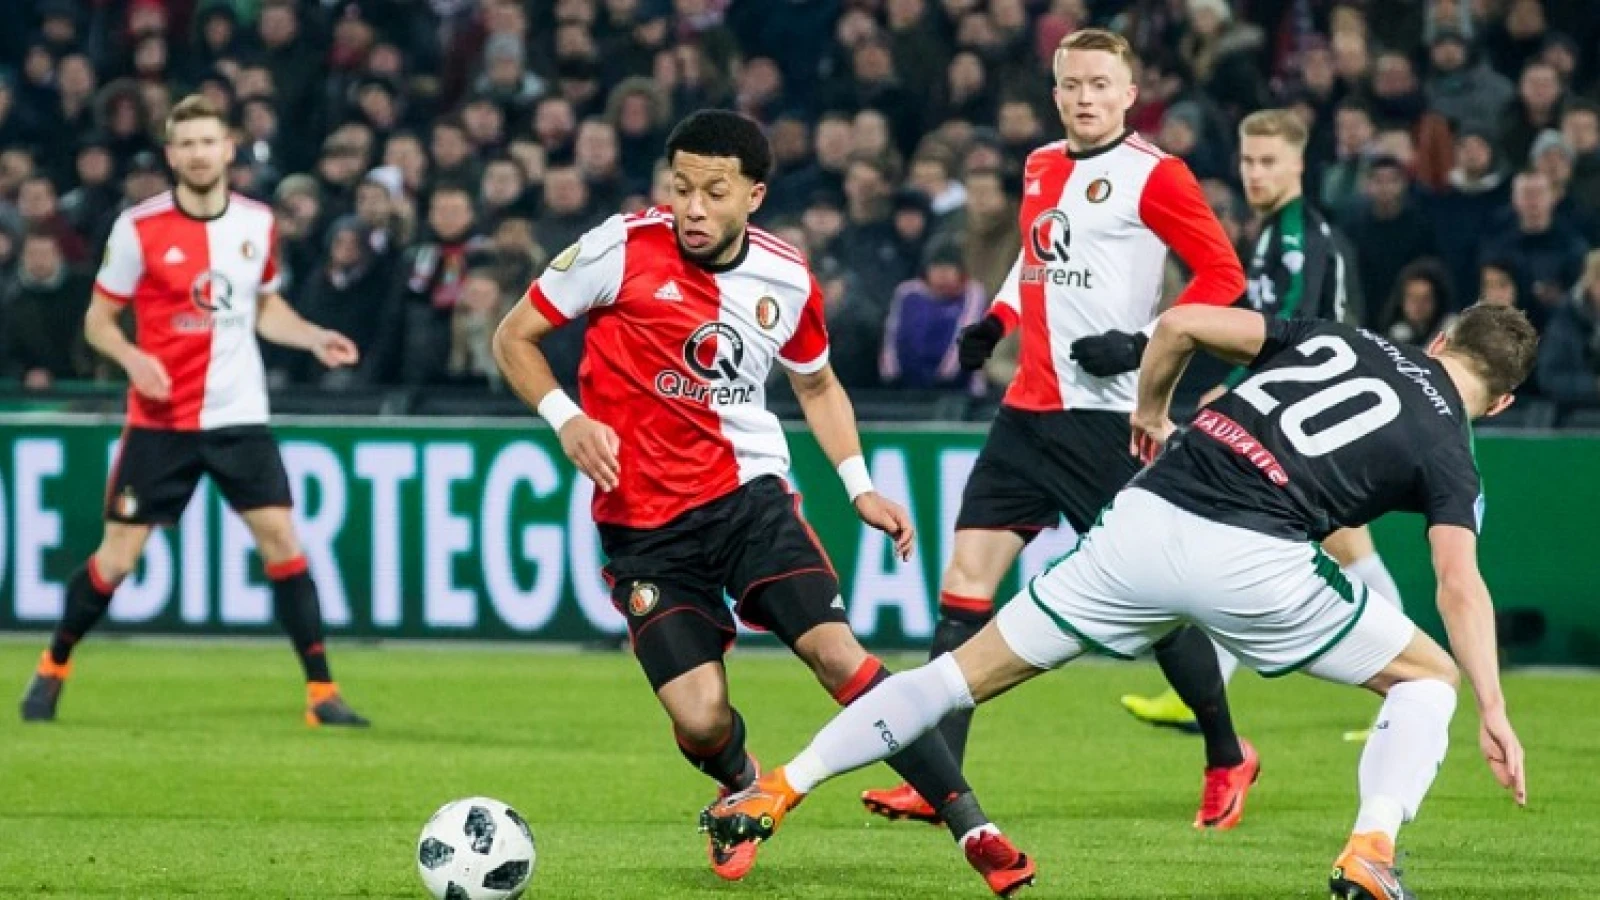 LIVE | Feyenoord - FC Groningen 3-0 | Einde wedstrijd